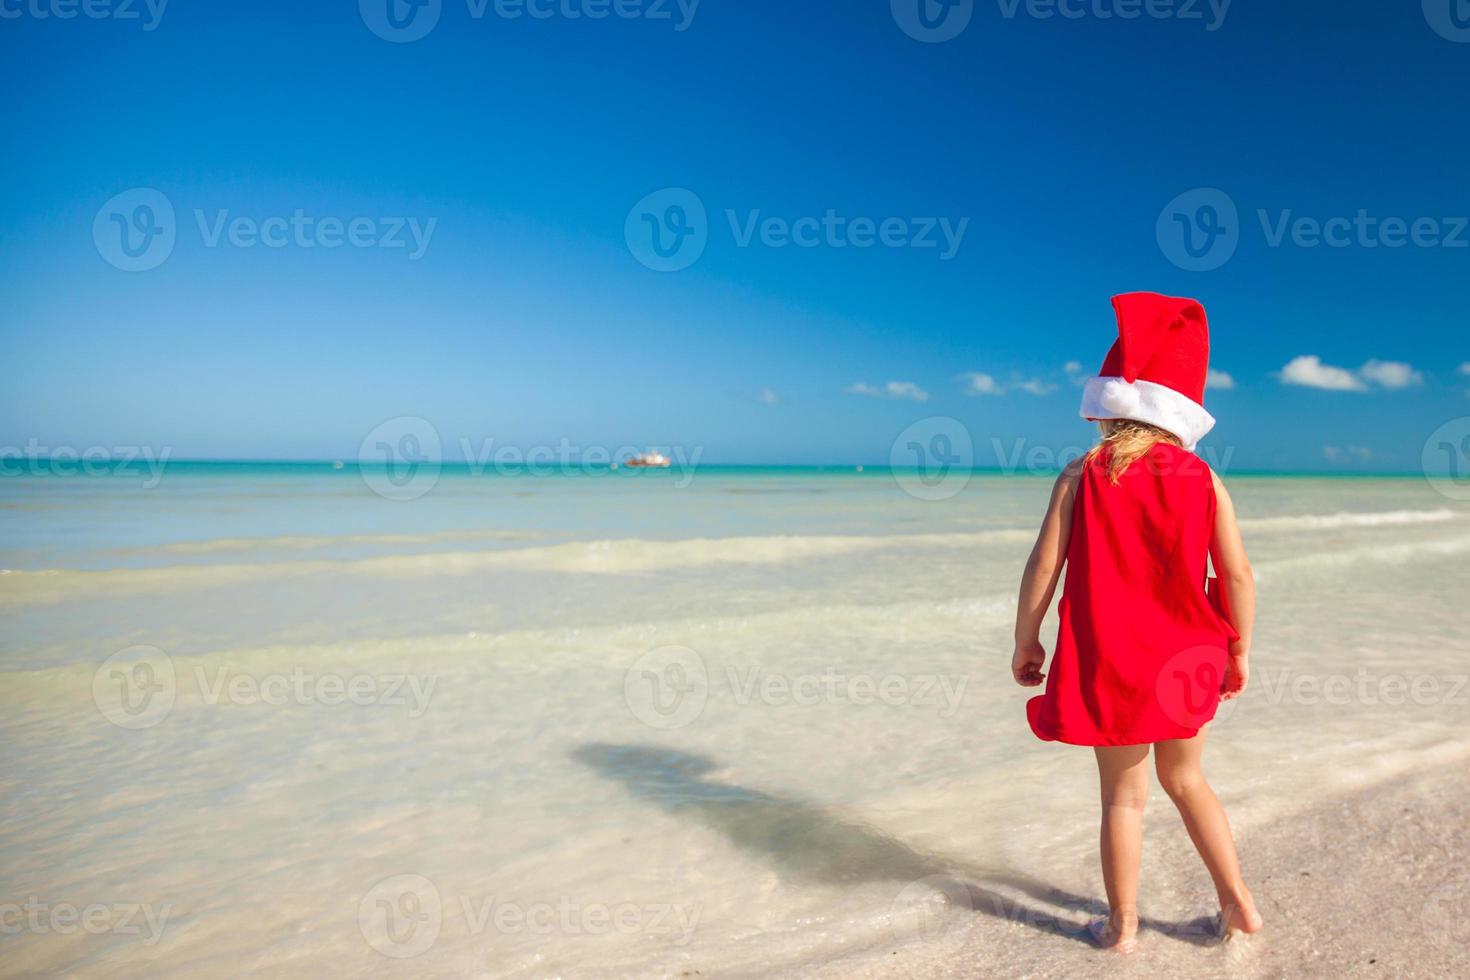 menina adorável com chapéu de Papai Noel vermelho na praia tropical foto